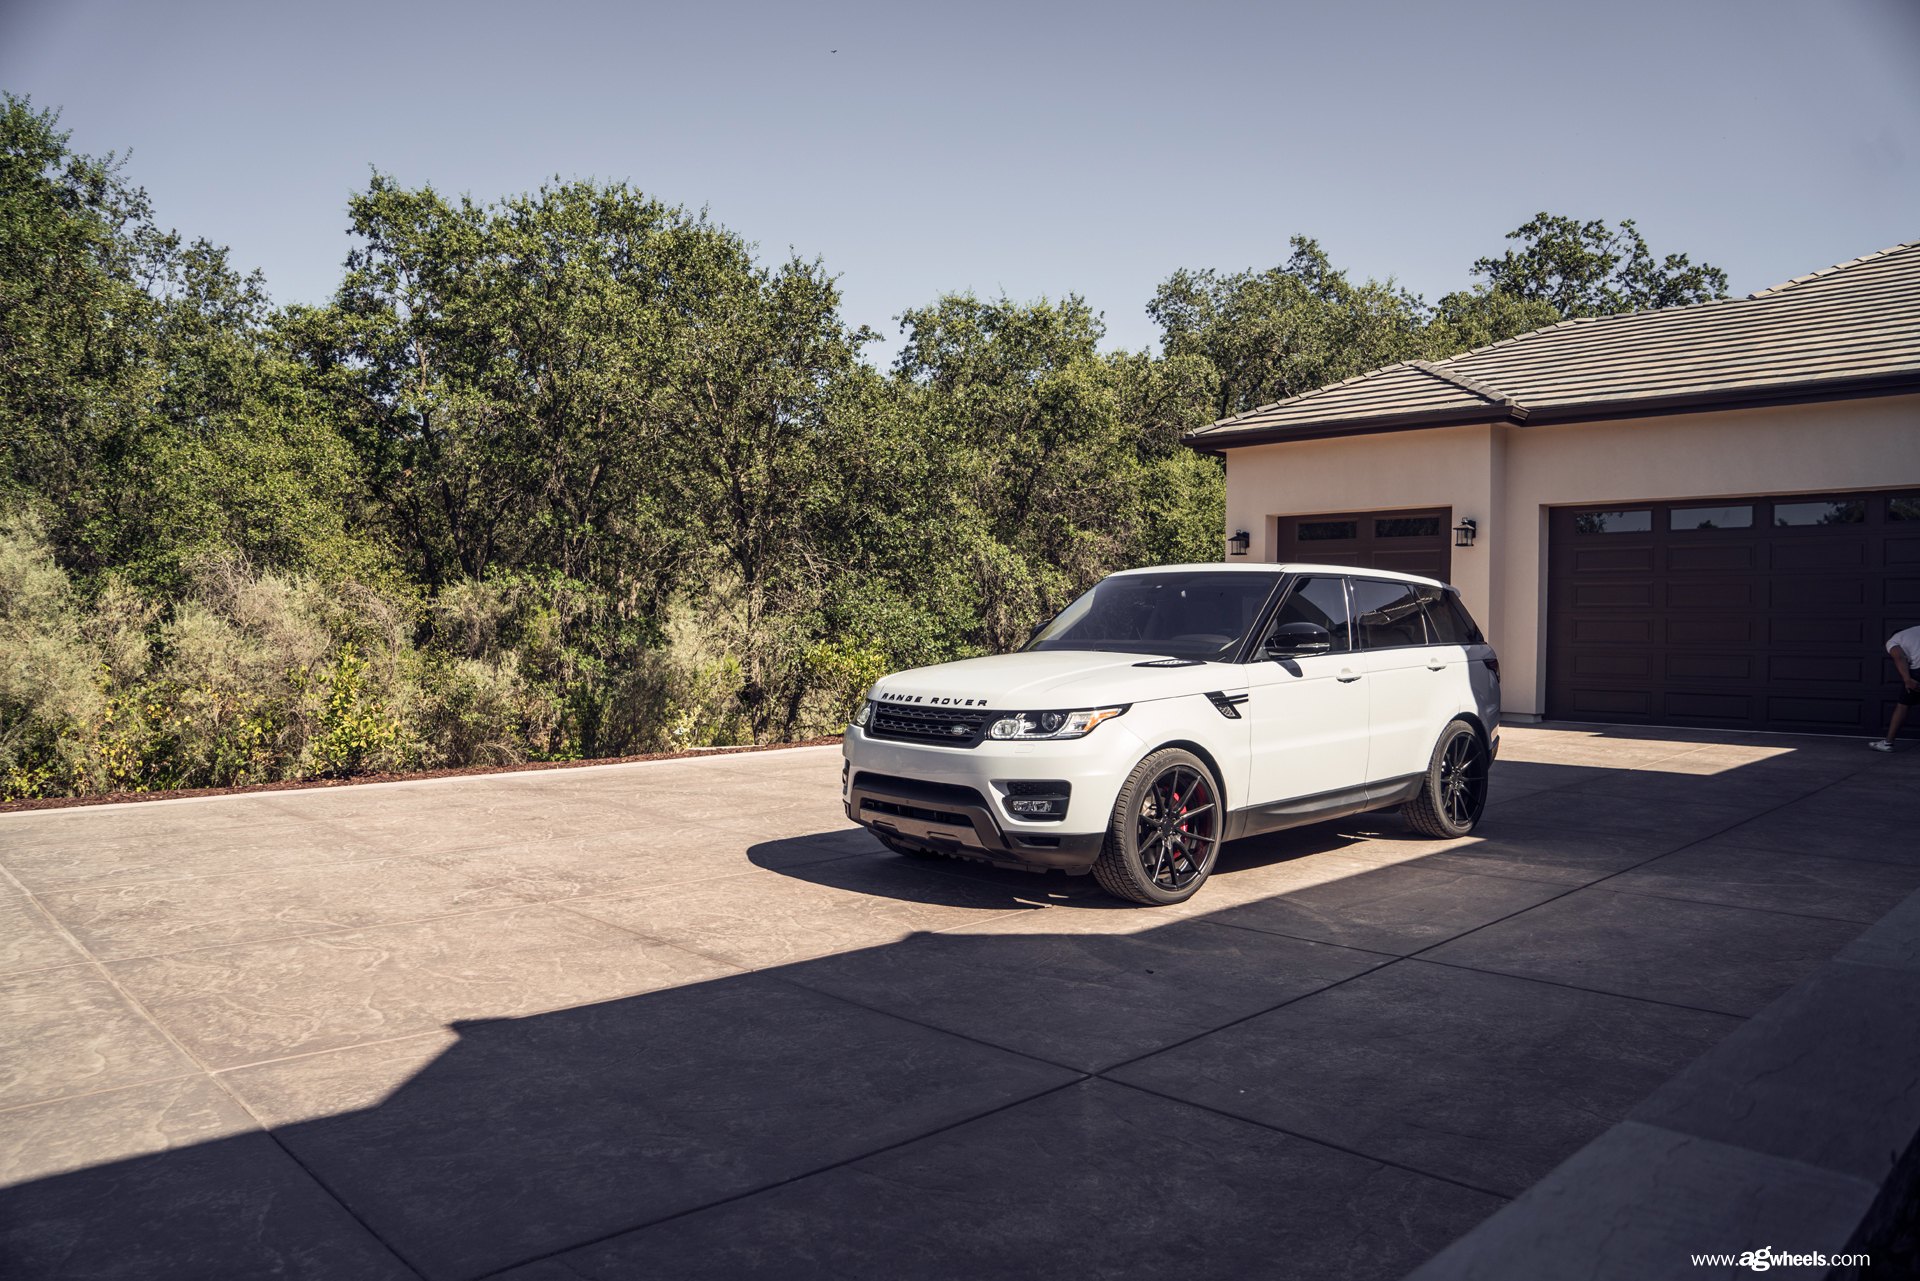 Black Avant Garde Rims on White Range Rover Sport - Photo by Avant Garde Wheels